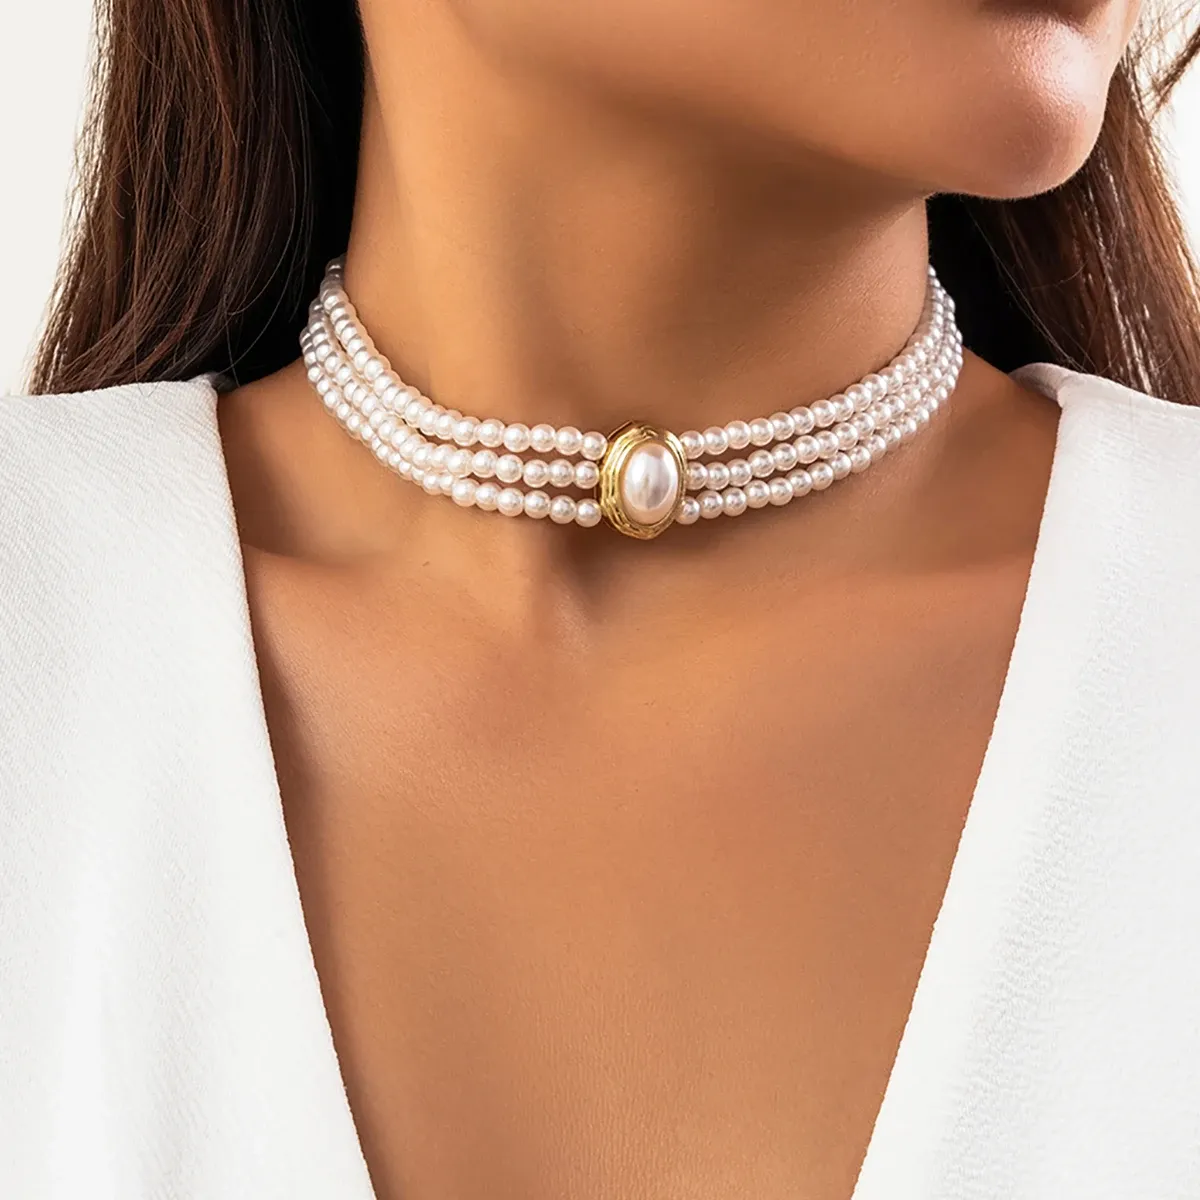 Halsketten Purui Elegante Imitation Perlen Halskette Mehrschichtige handgefertigte Strangperlen Naturstein CHOKER FRAUEN JUDELLY NACKEI Kette